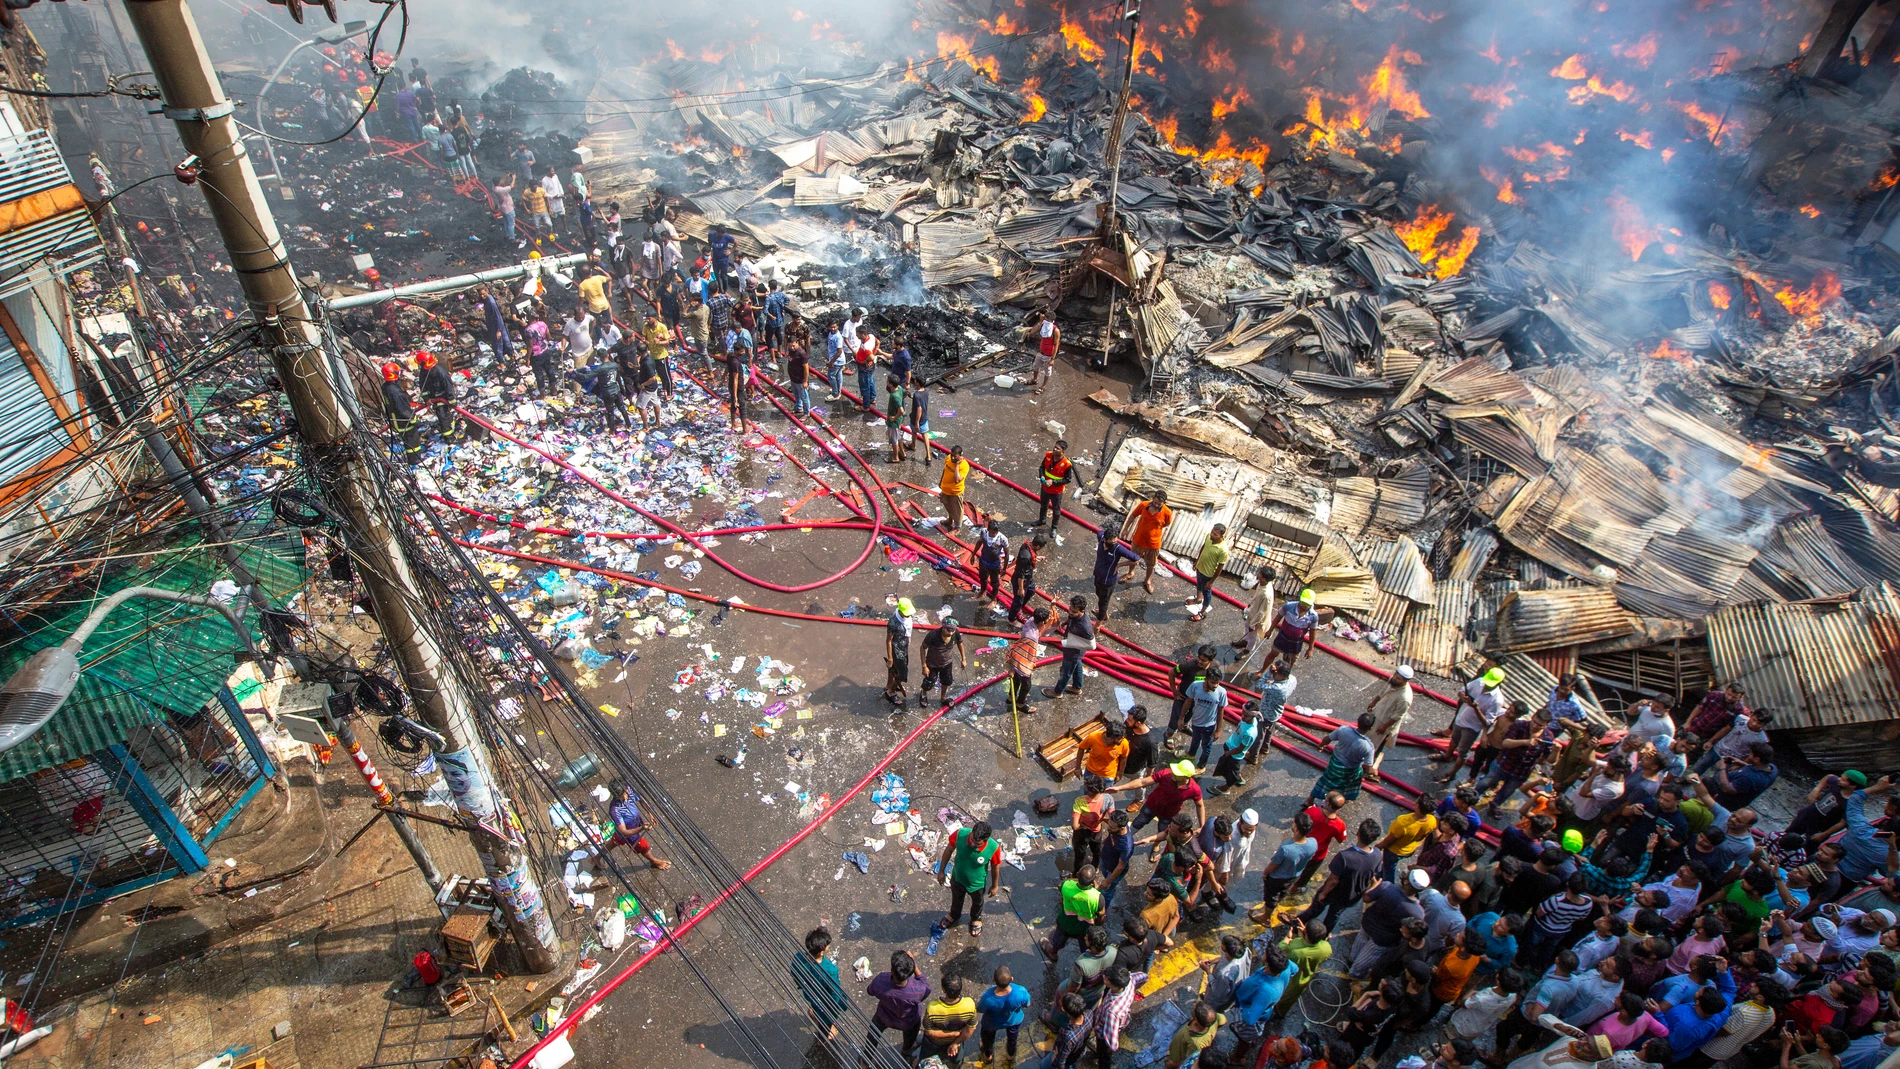 Un incendio arrasa un mercado con miles de tiendas de ropa en Bangladesh